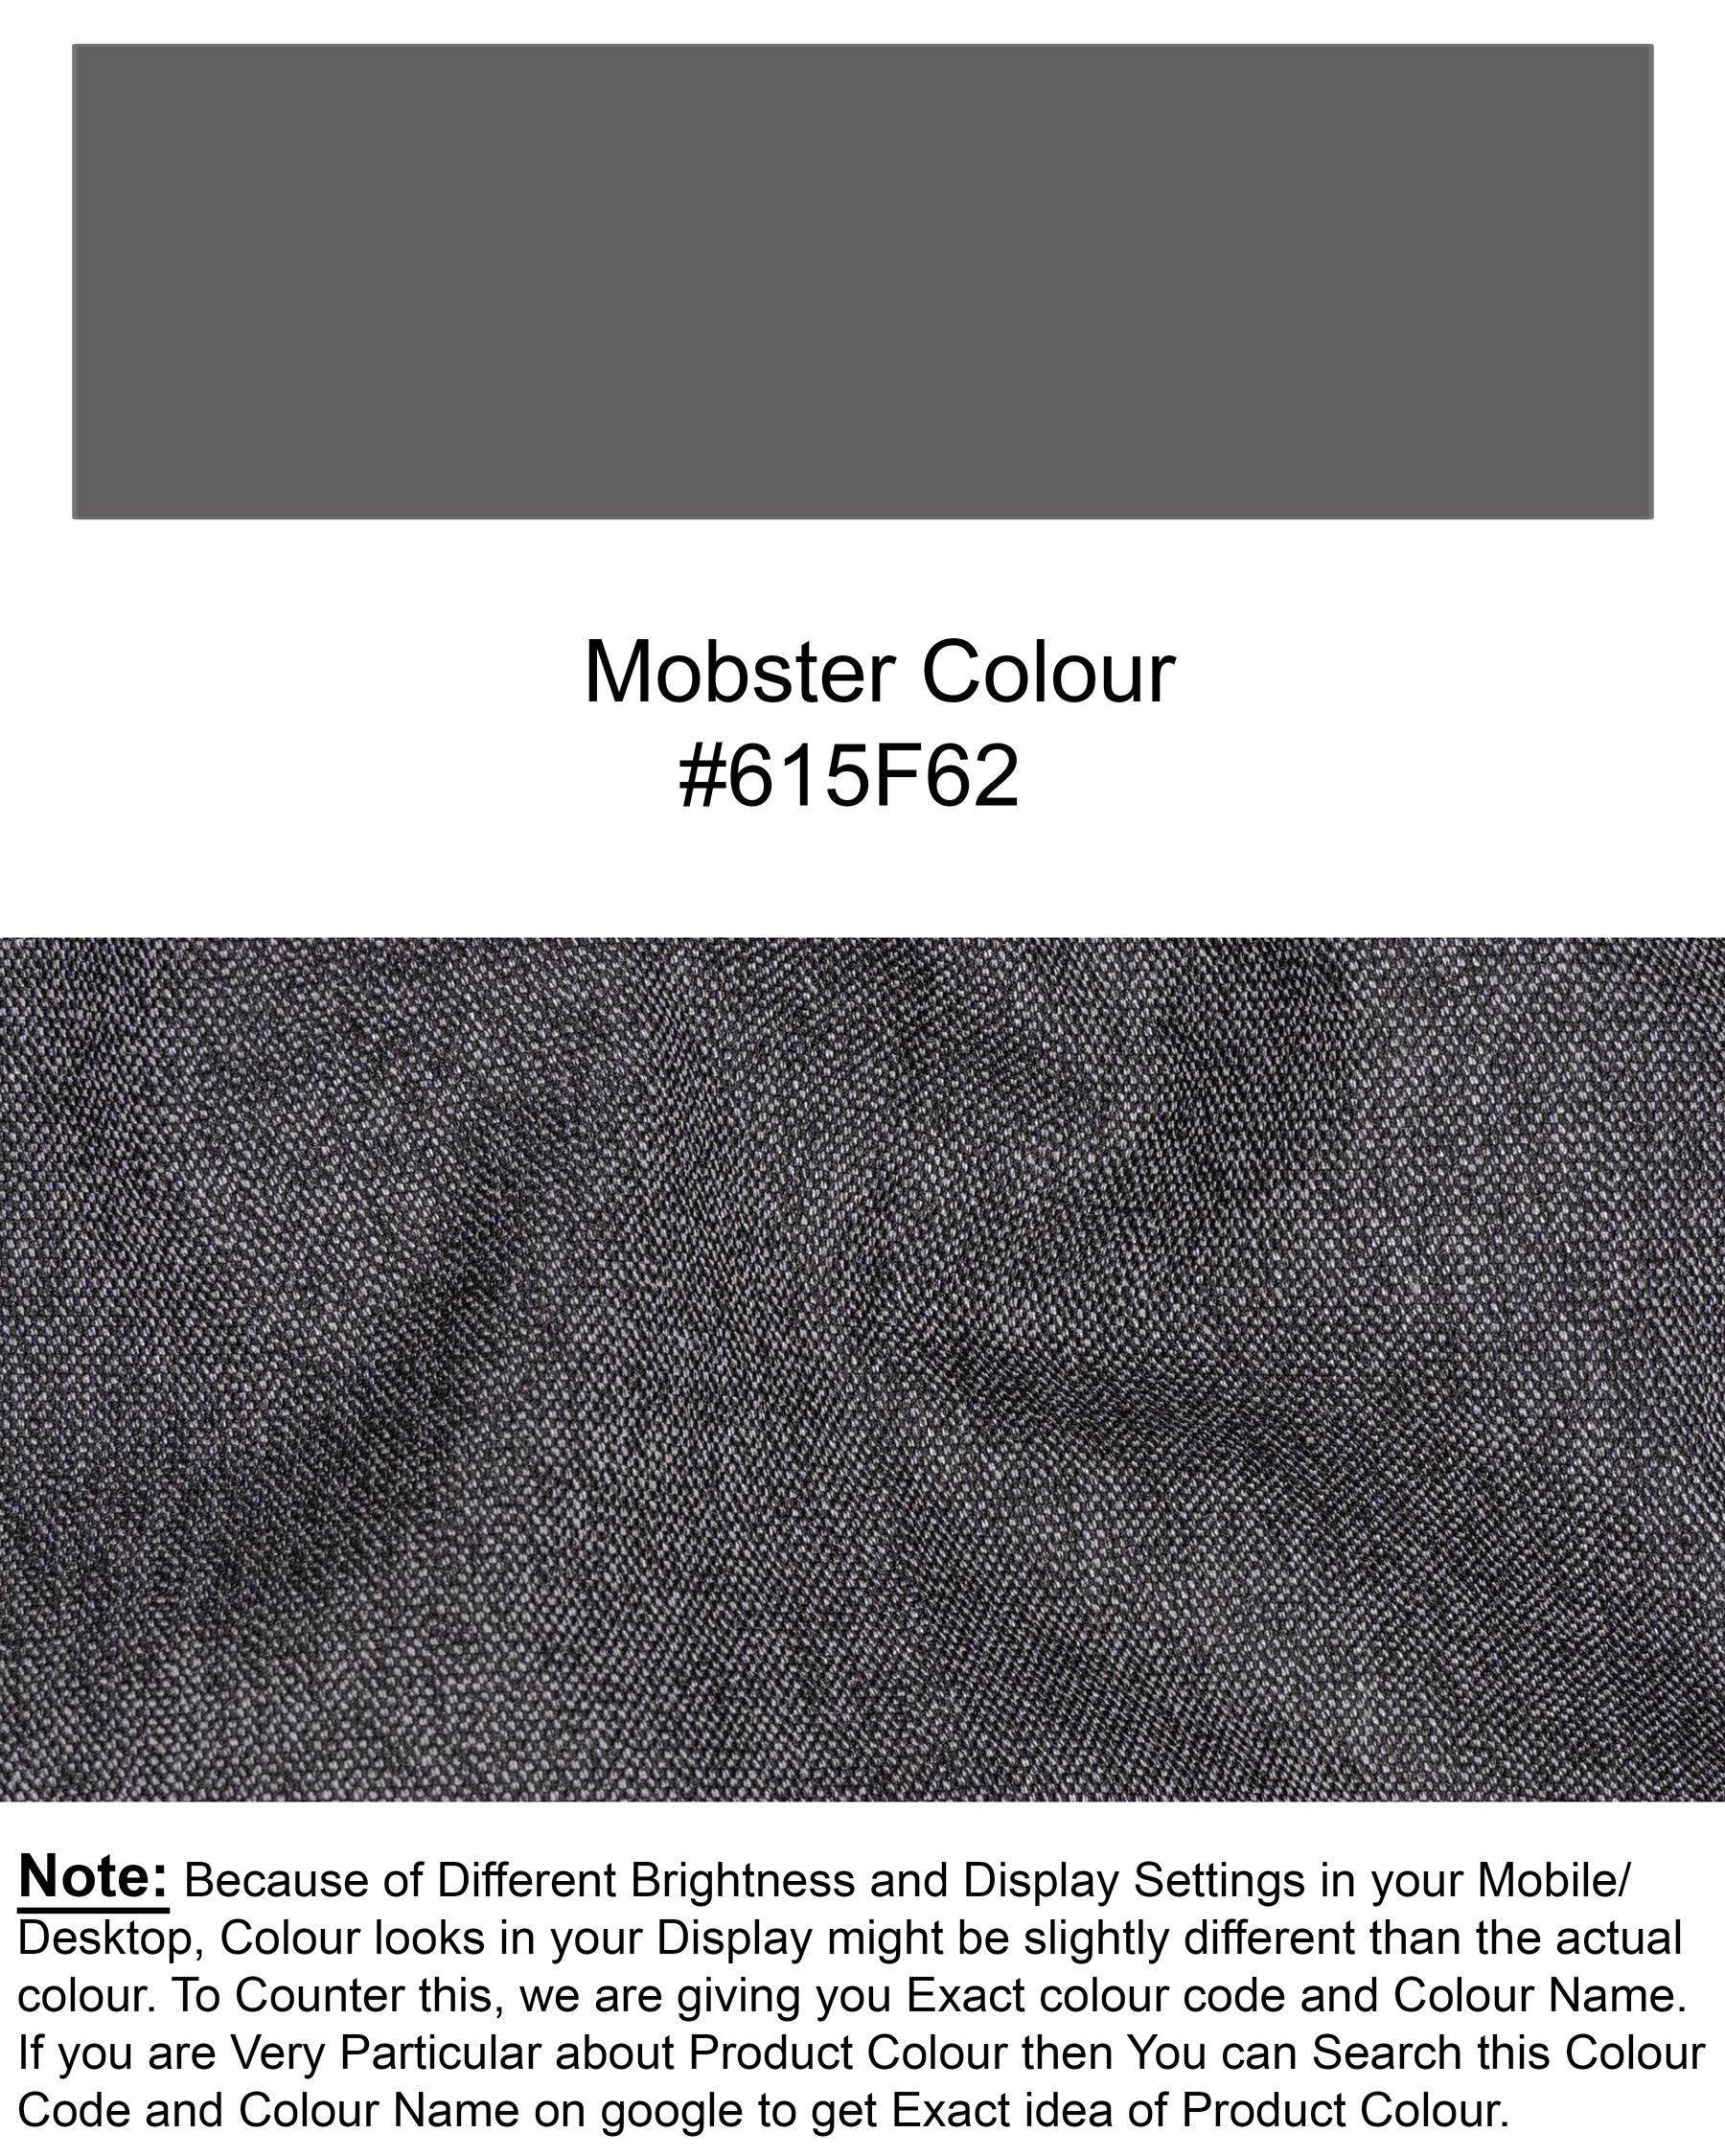 Mobster Grey Premium Cotton Suit T1451-28, T1451-30, T1451-32, T1451-34, T1451-36, T1451-38, T1451-40, T1451-42, T1451-44